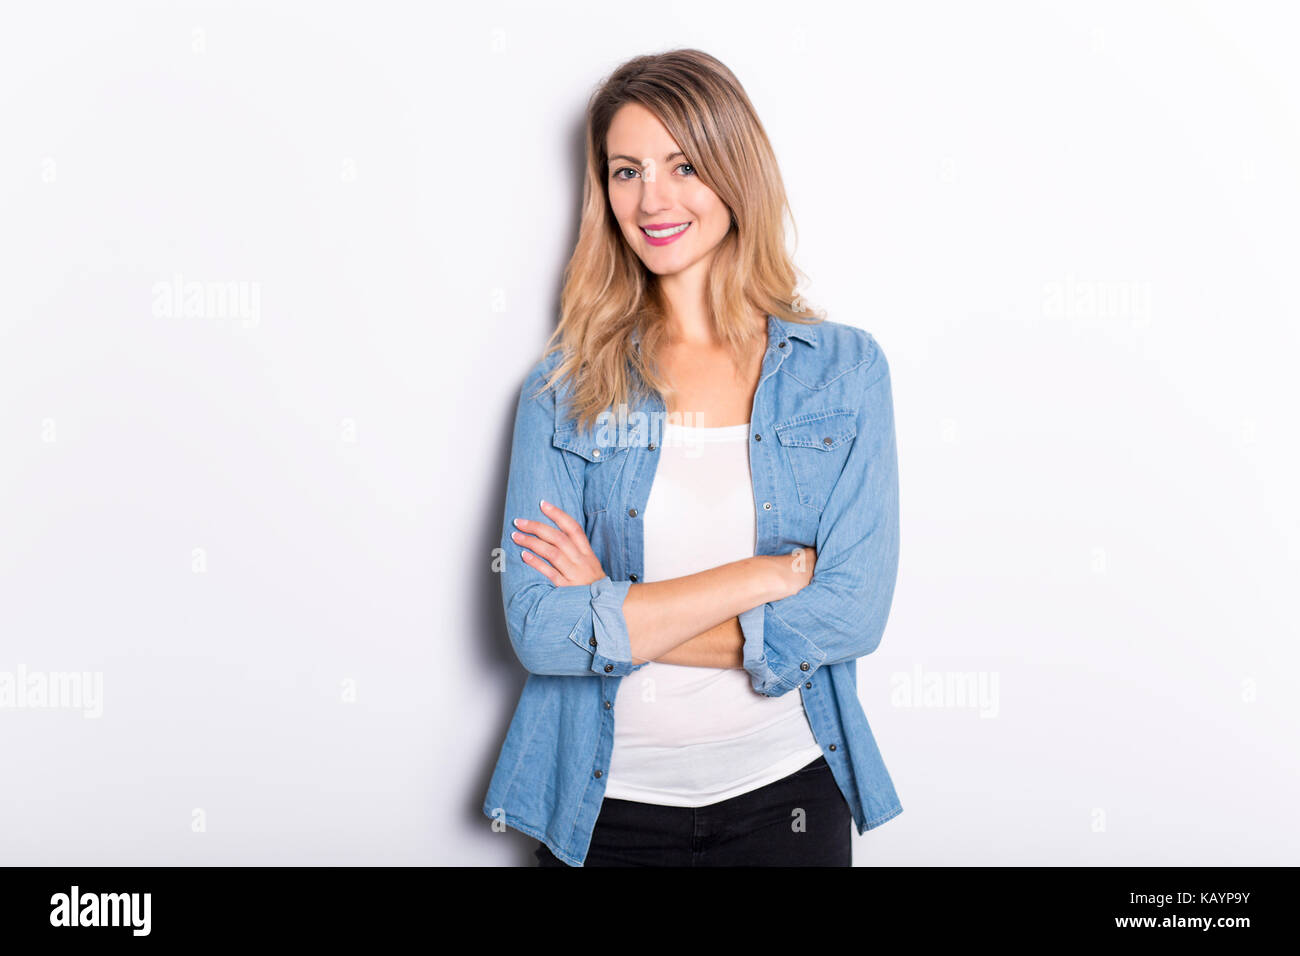 Junge Frau in Jeans Hemd und Jeans, lehnte sich gegen graue Wand Hintergrund Stockfoto